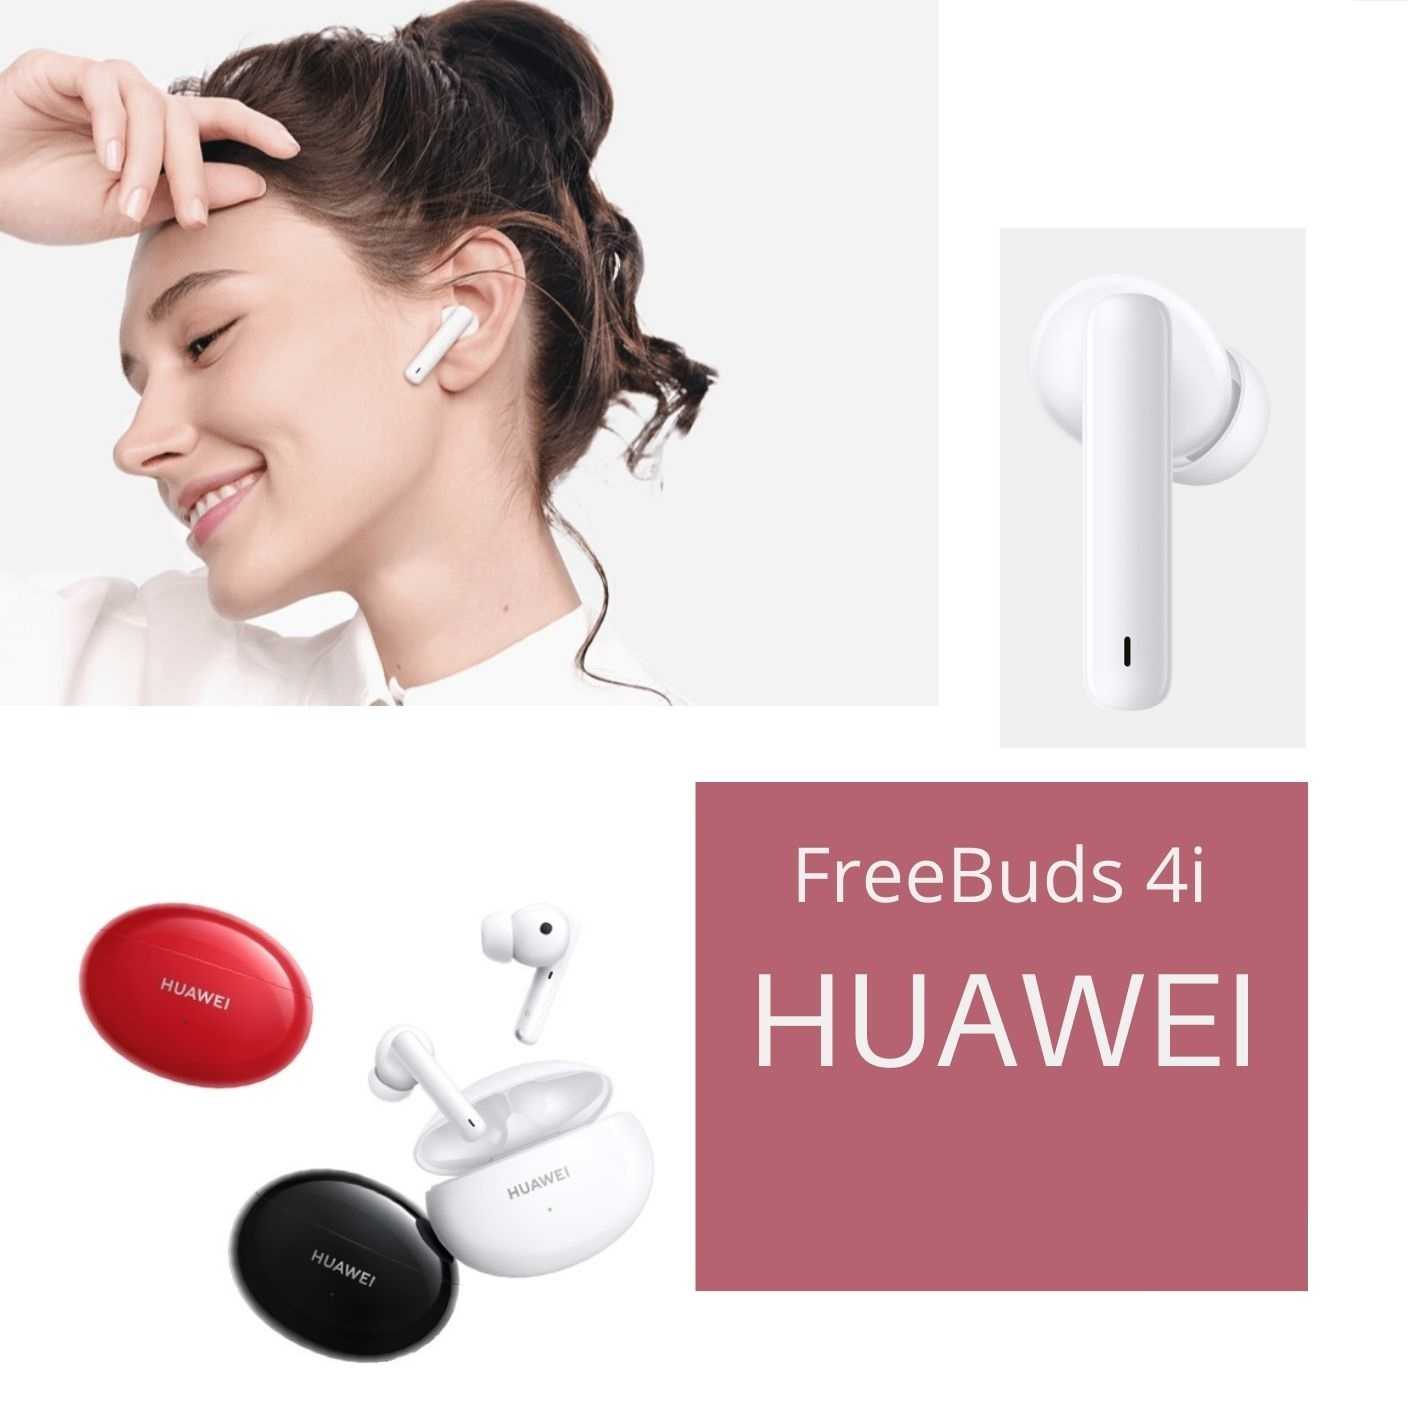 Huawei freebuds 5 купить